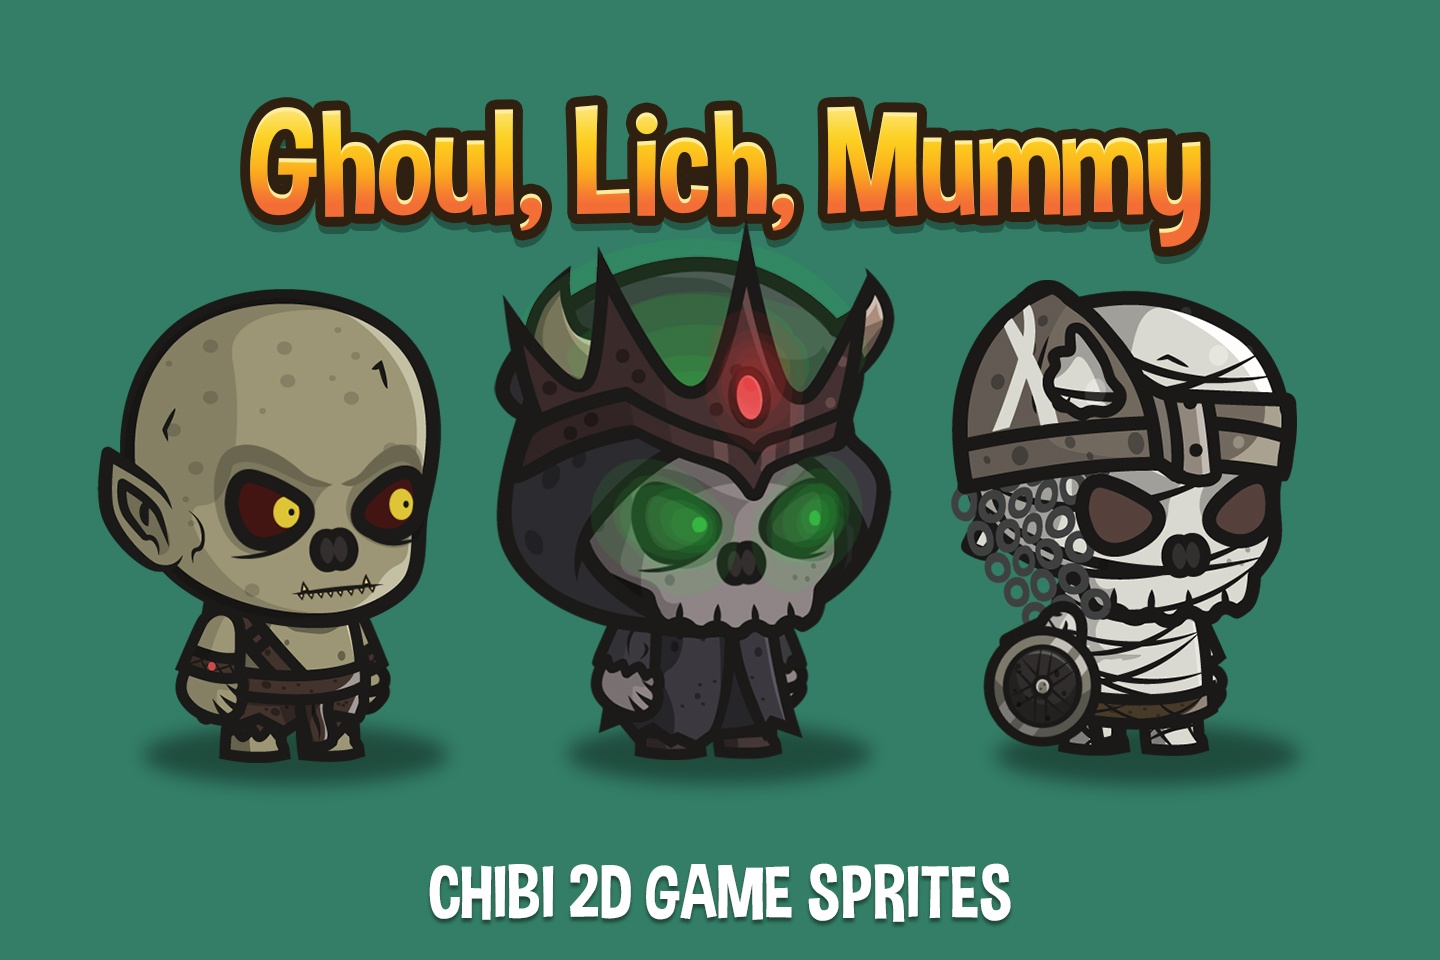 Ghoul, Lich, Mummy Chibi 2D Game Sprites - CraftPix.net